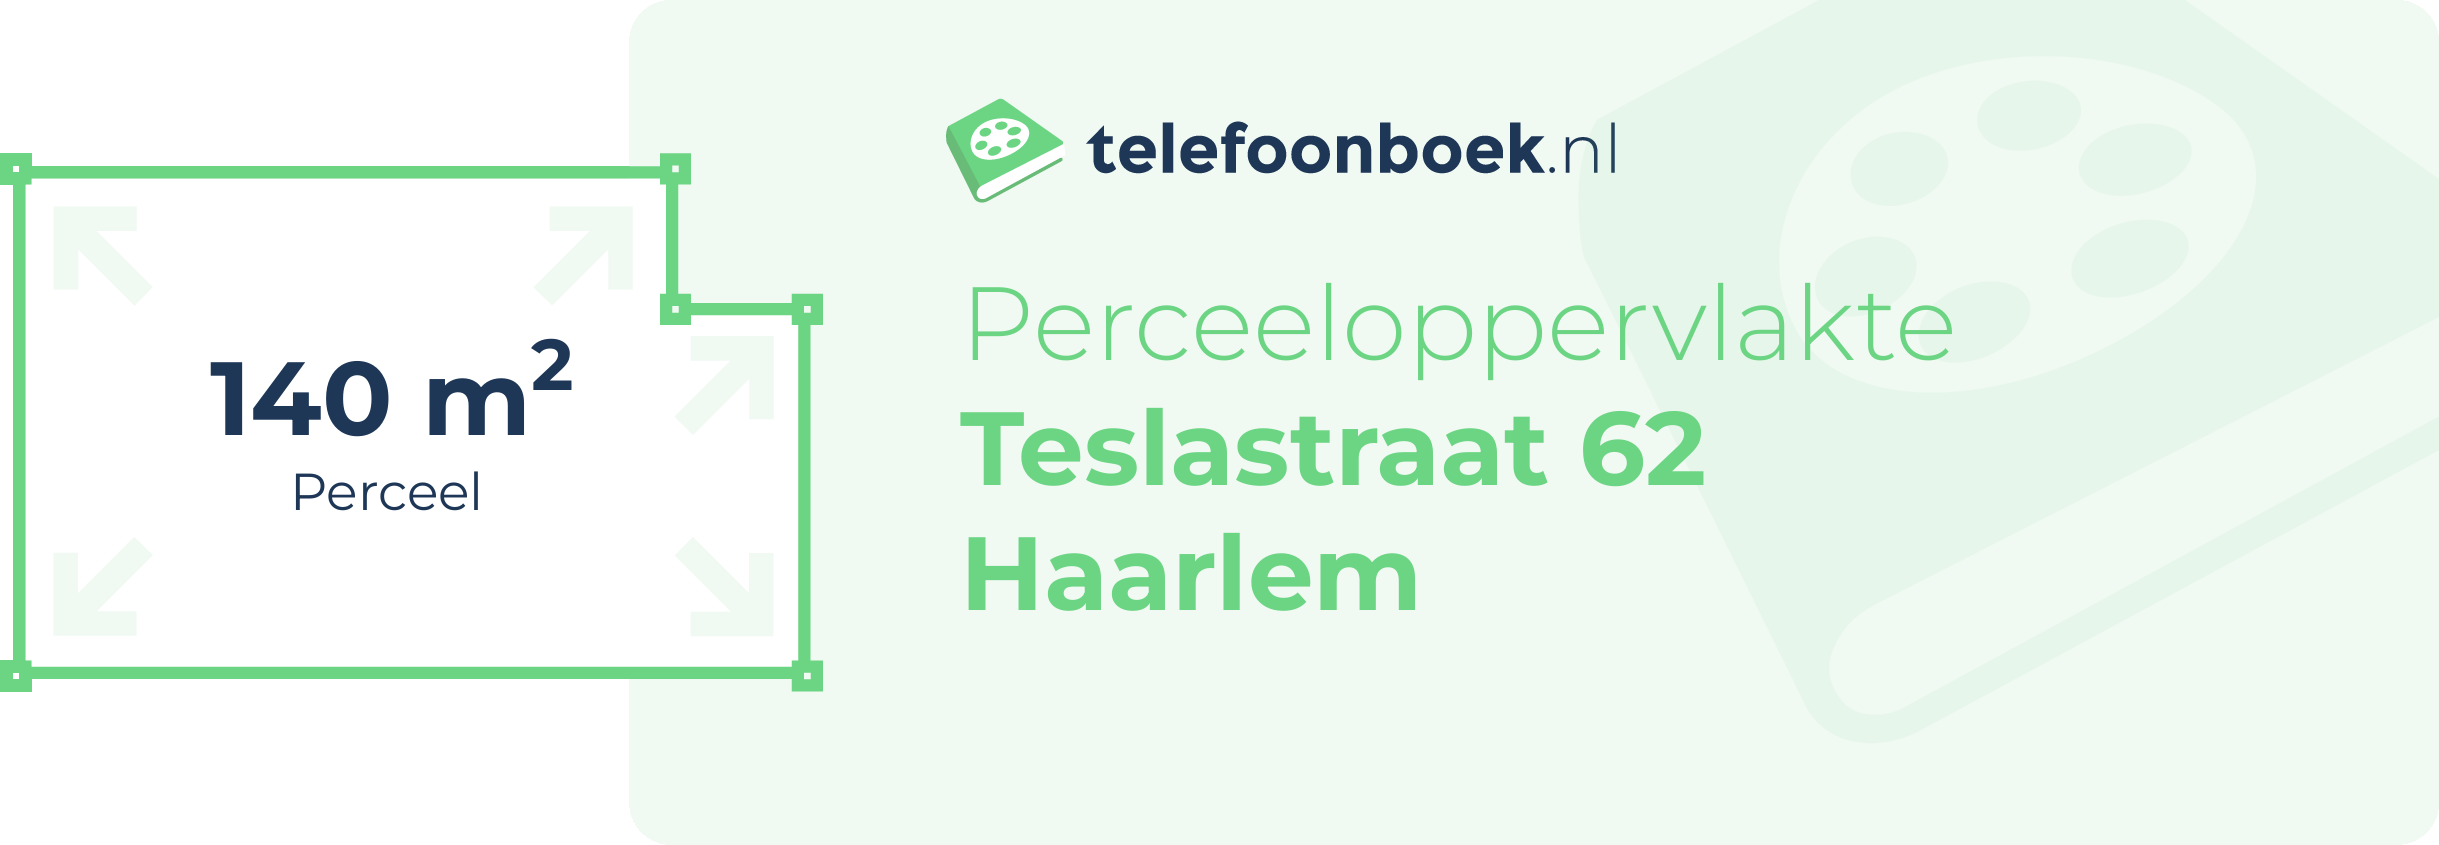 Perceeloppervlakte Teslastraat 62 Haarlem